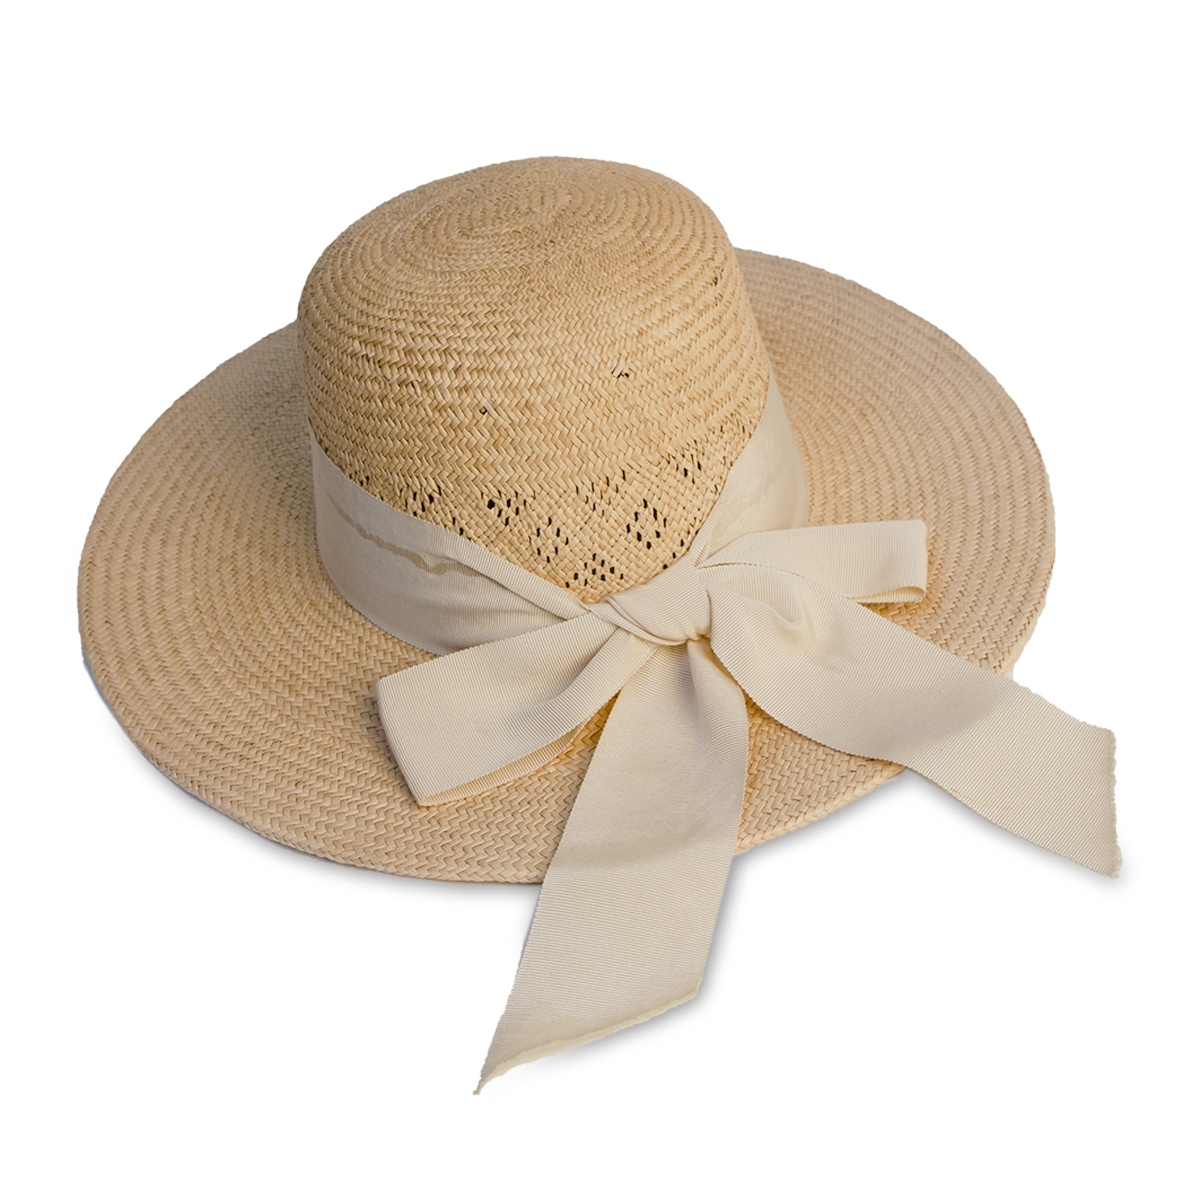 vintage straw hat, beach wedding